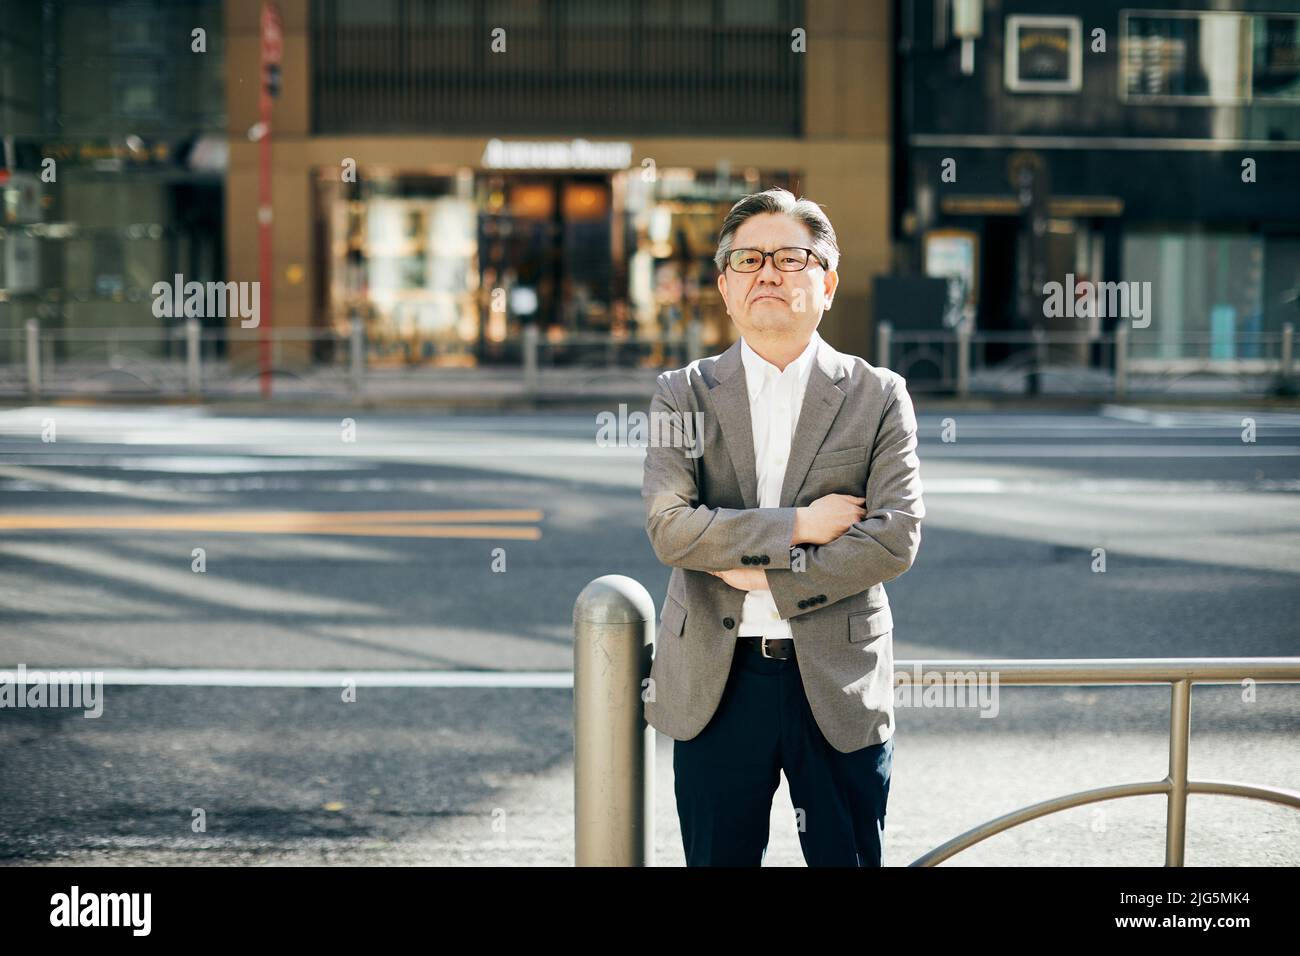 Retrato del hombre japonés Foto de stock